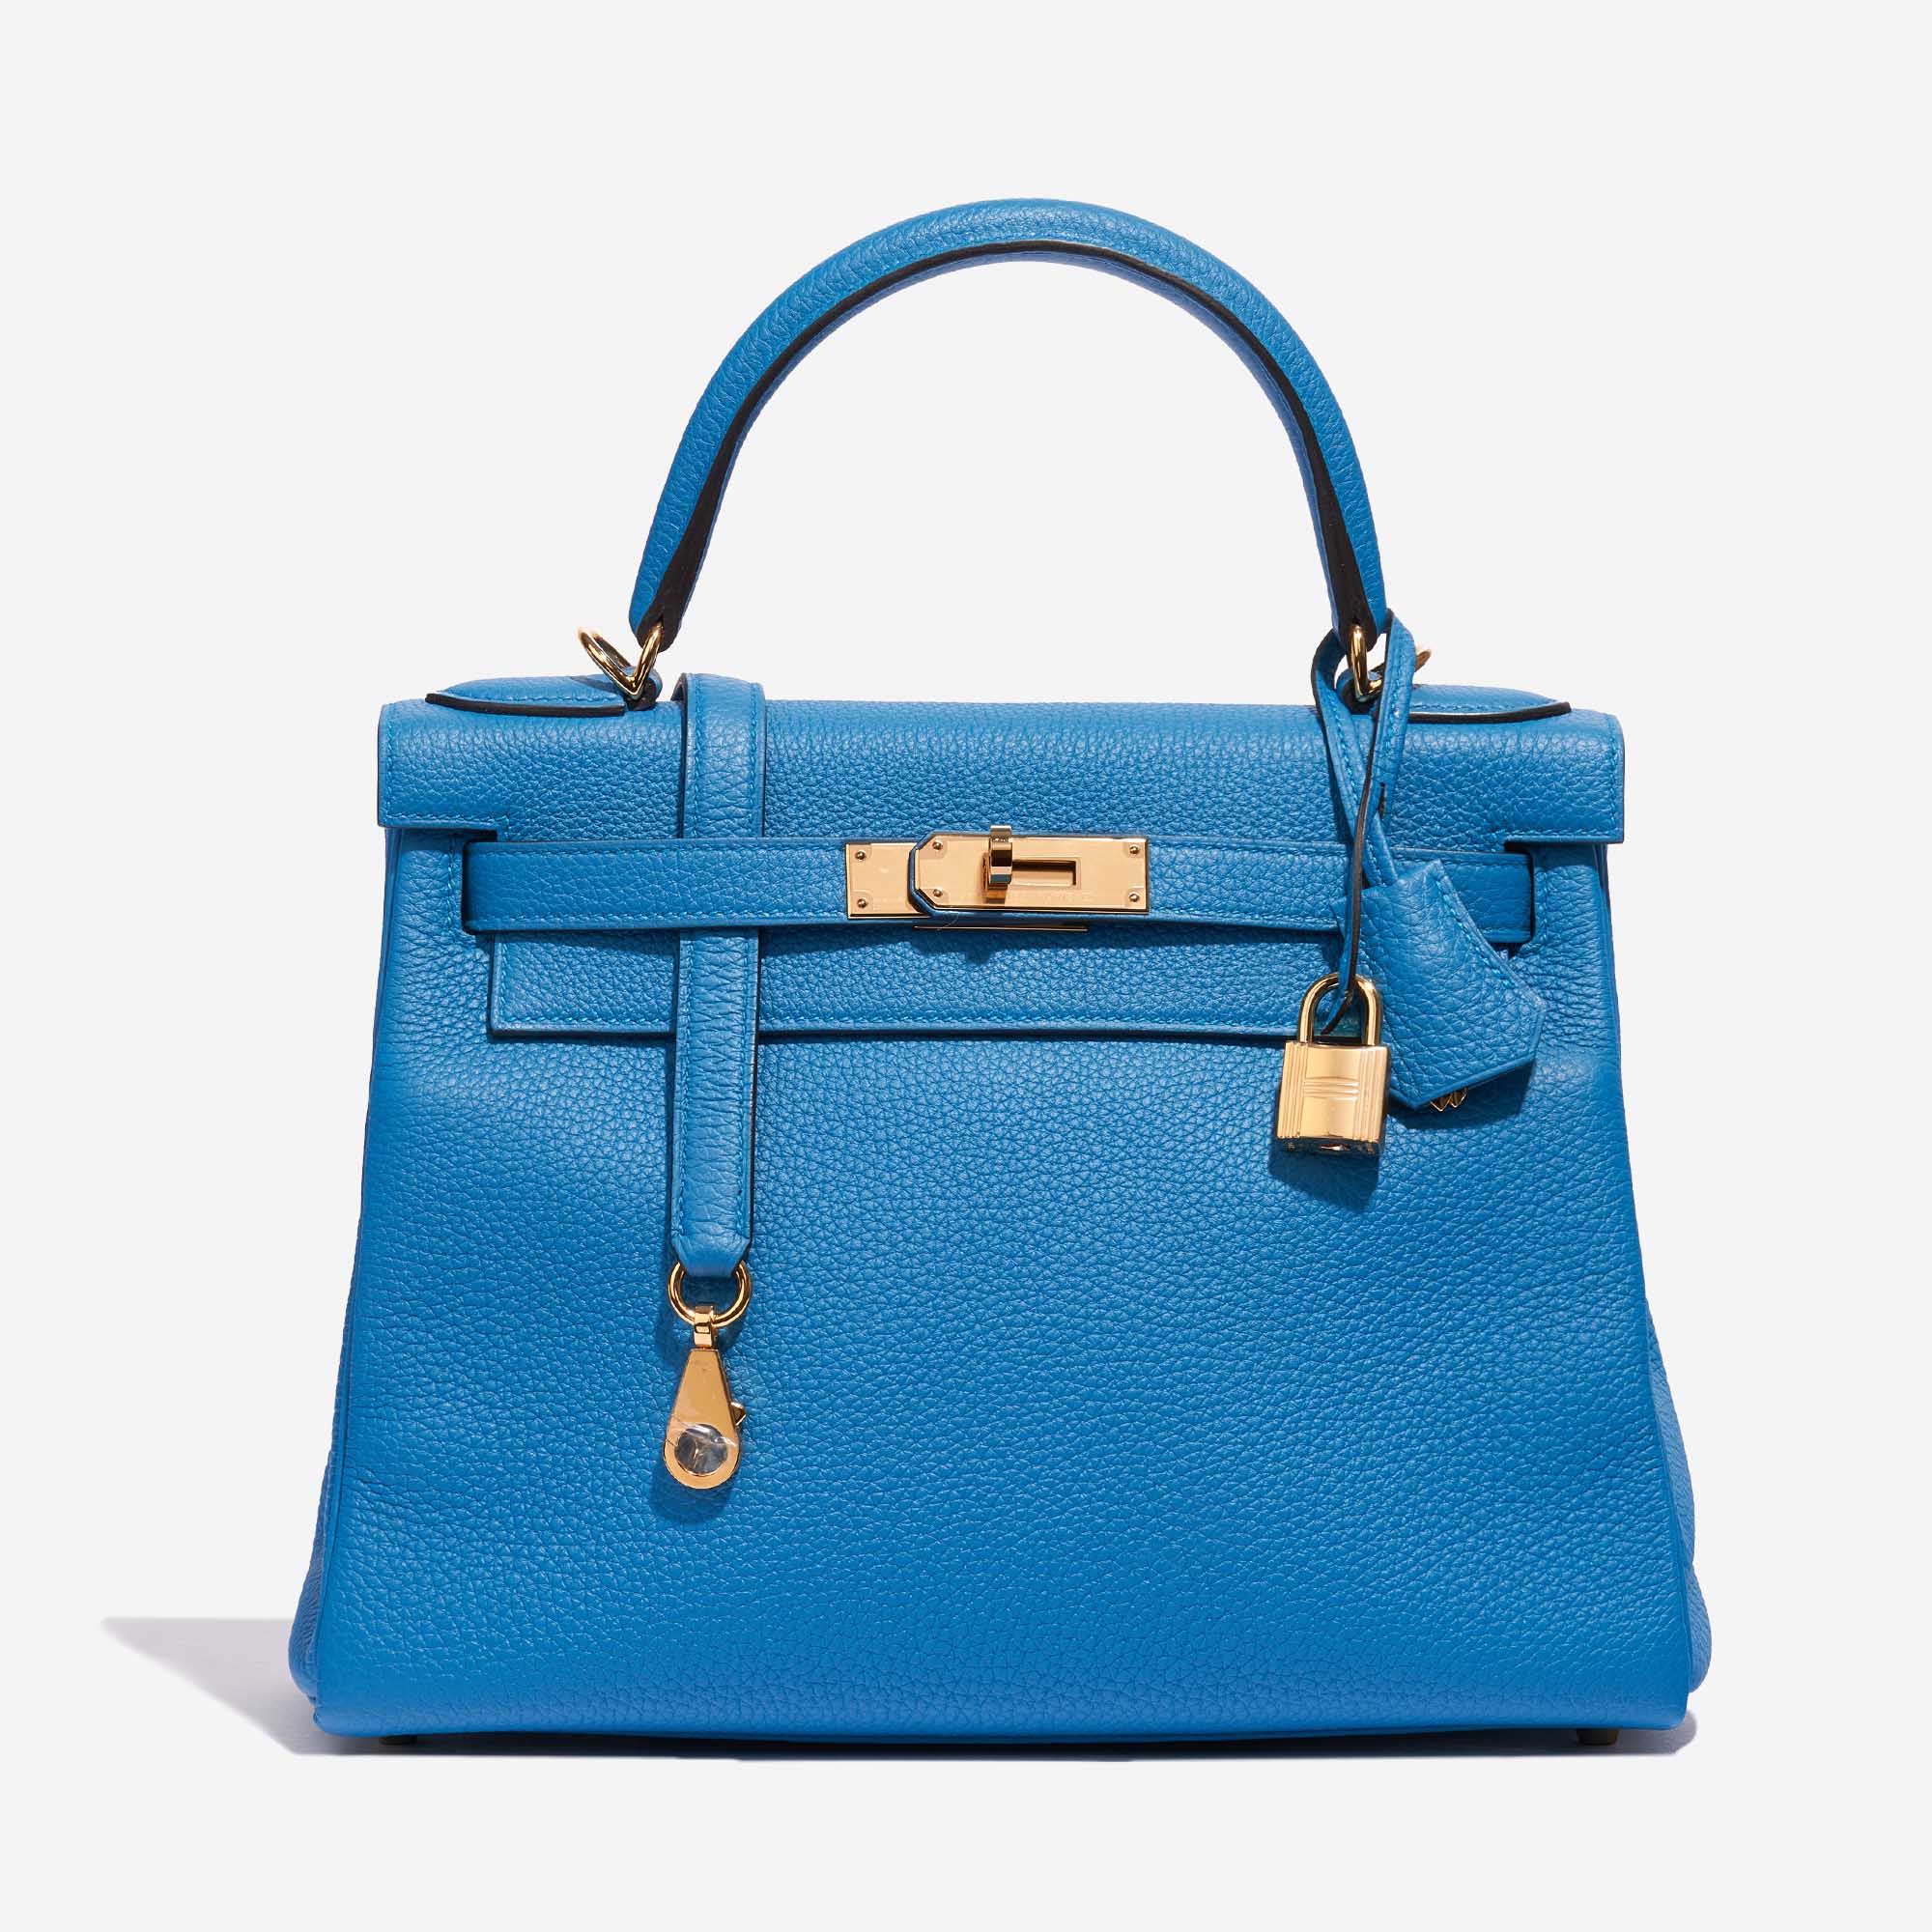 Pre-owned Hermès Tasche Kelly 28 Togo Blau Sansibar Blau Front | Verkaufen Sie Ihre Designer-Tasche auf Saclab.com